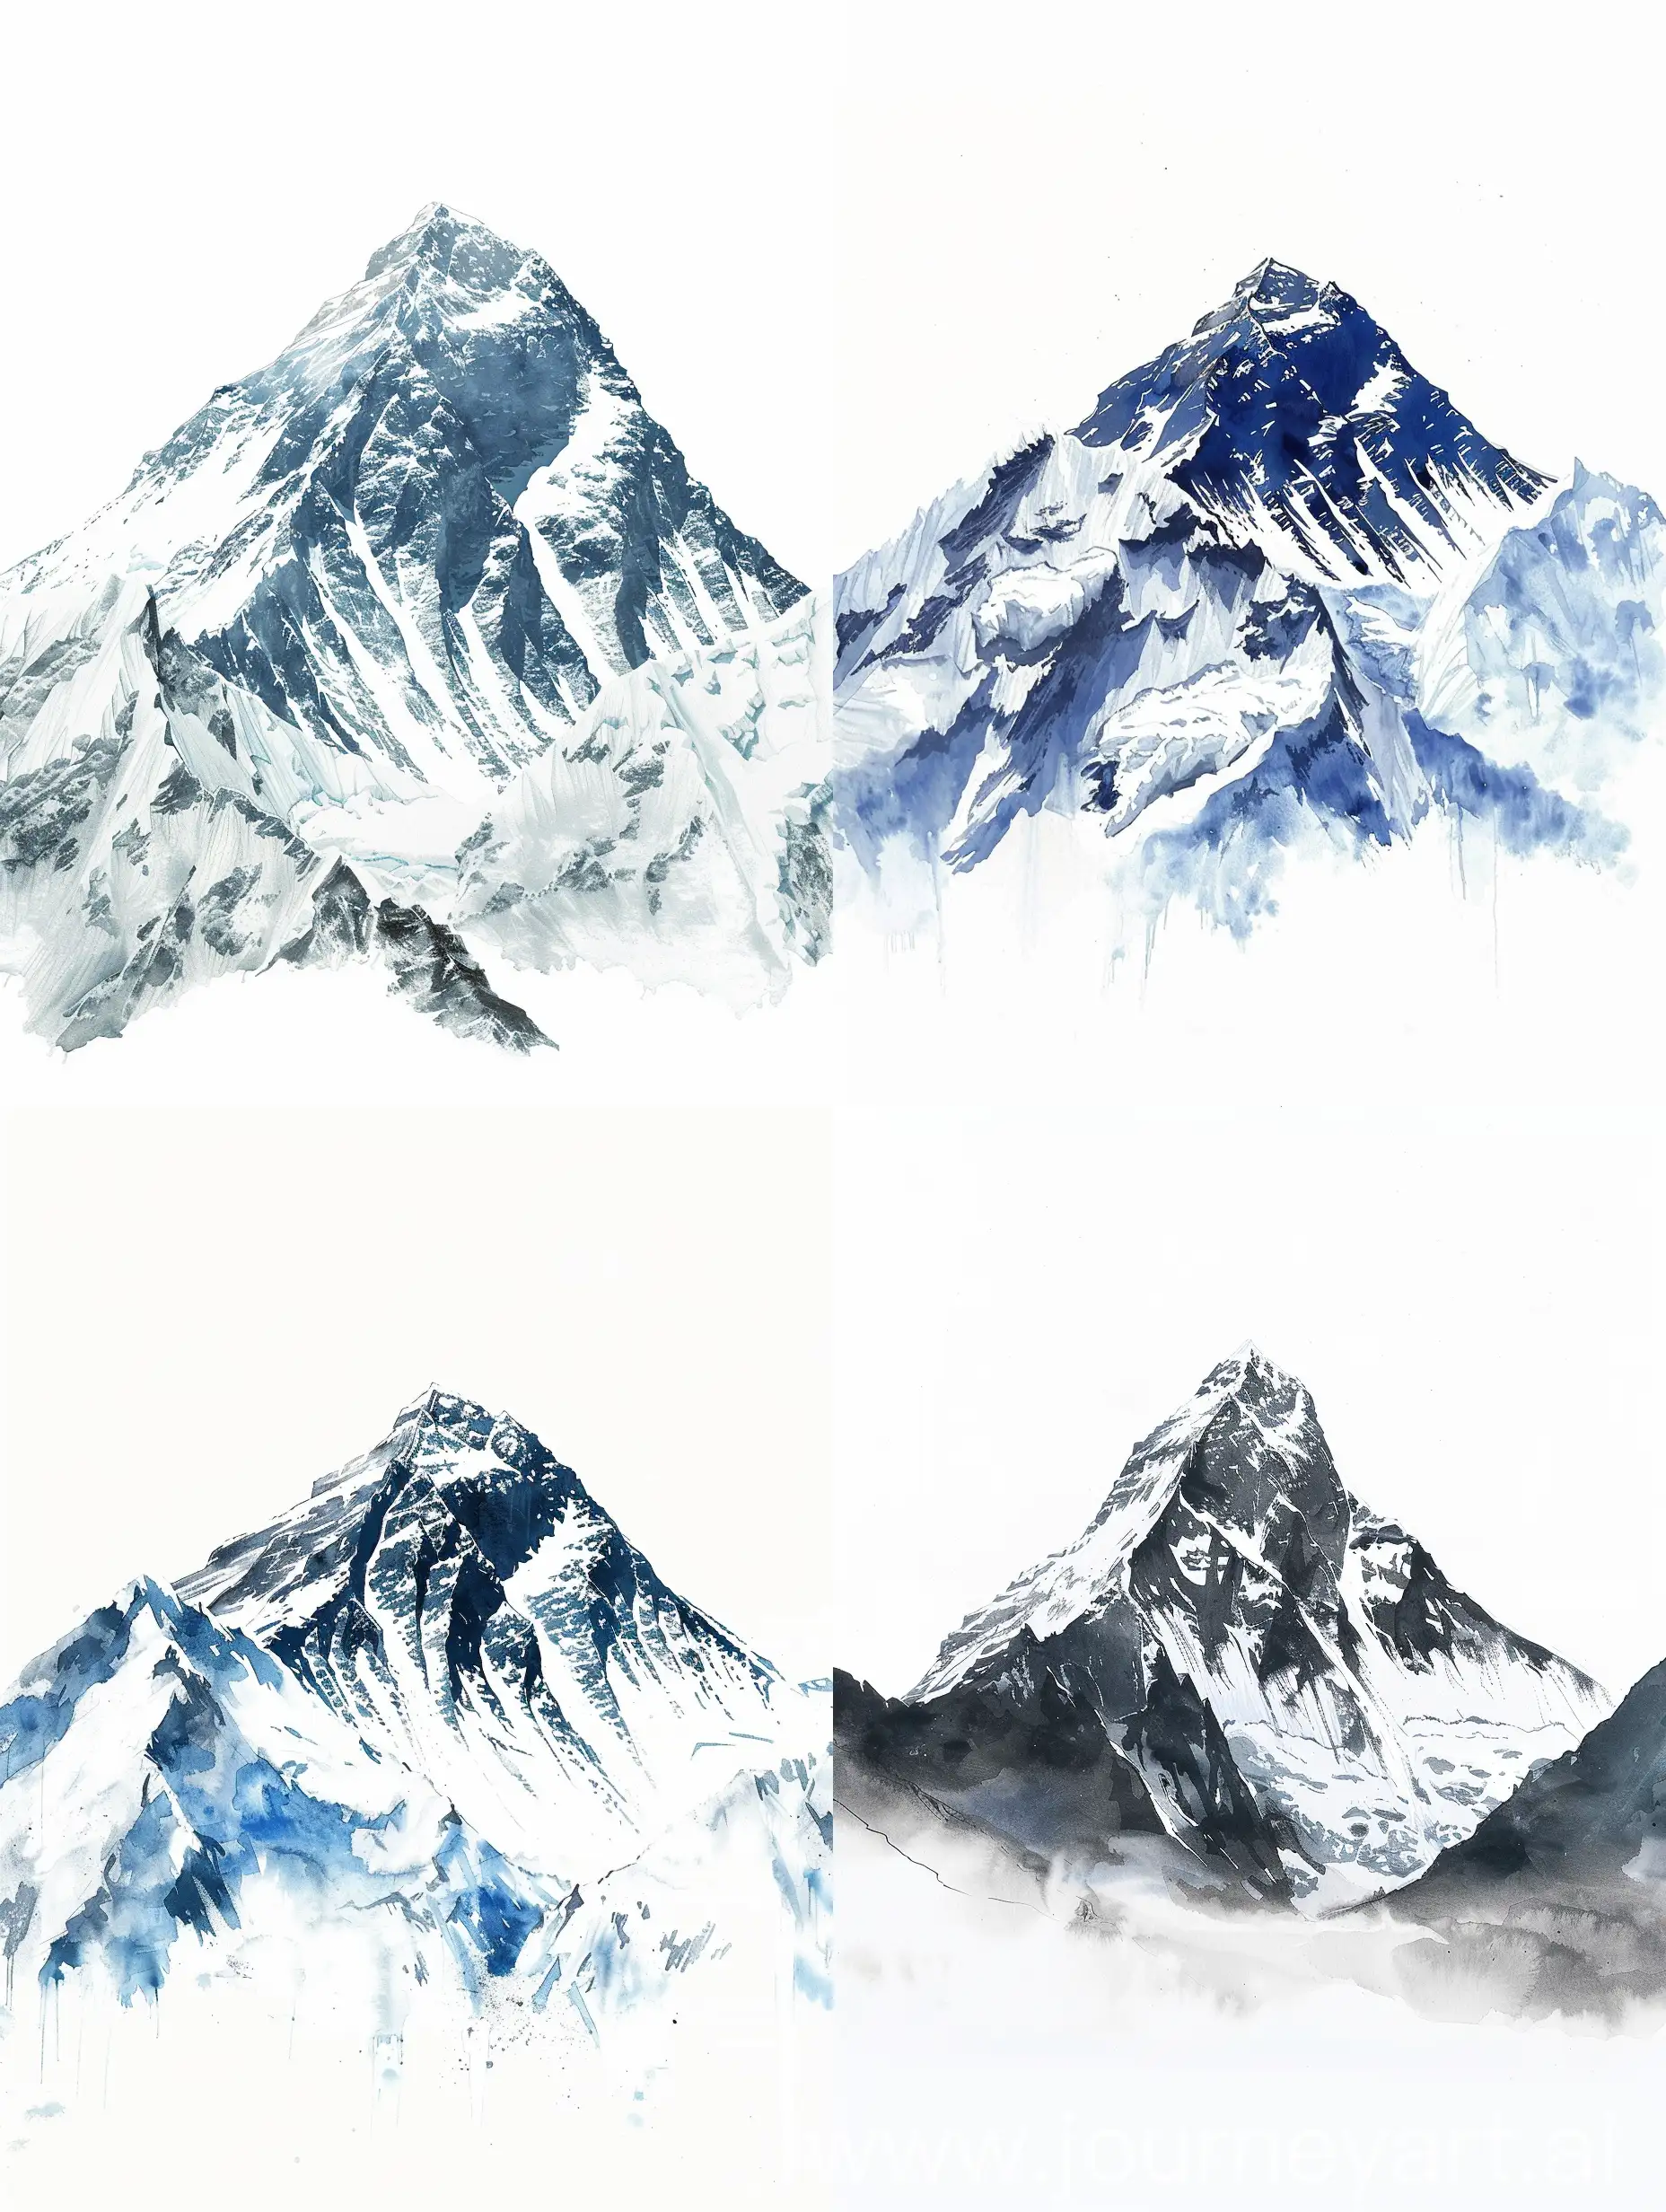 Majestic-Mount-Everest-Art-on-White-Background